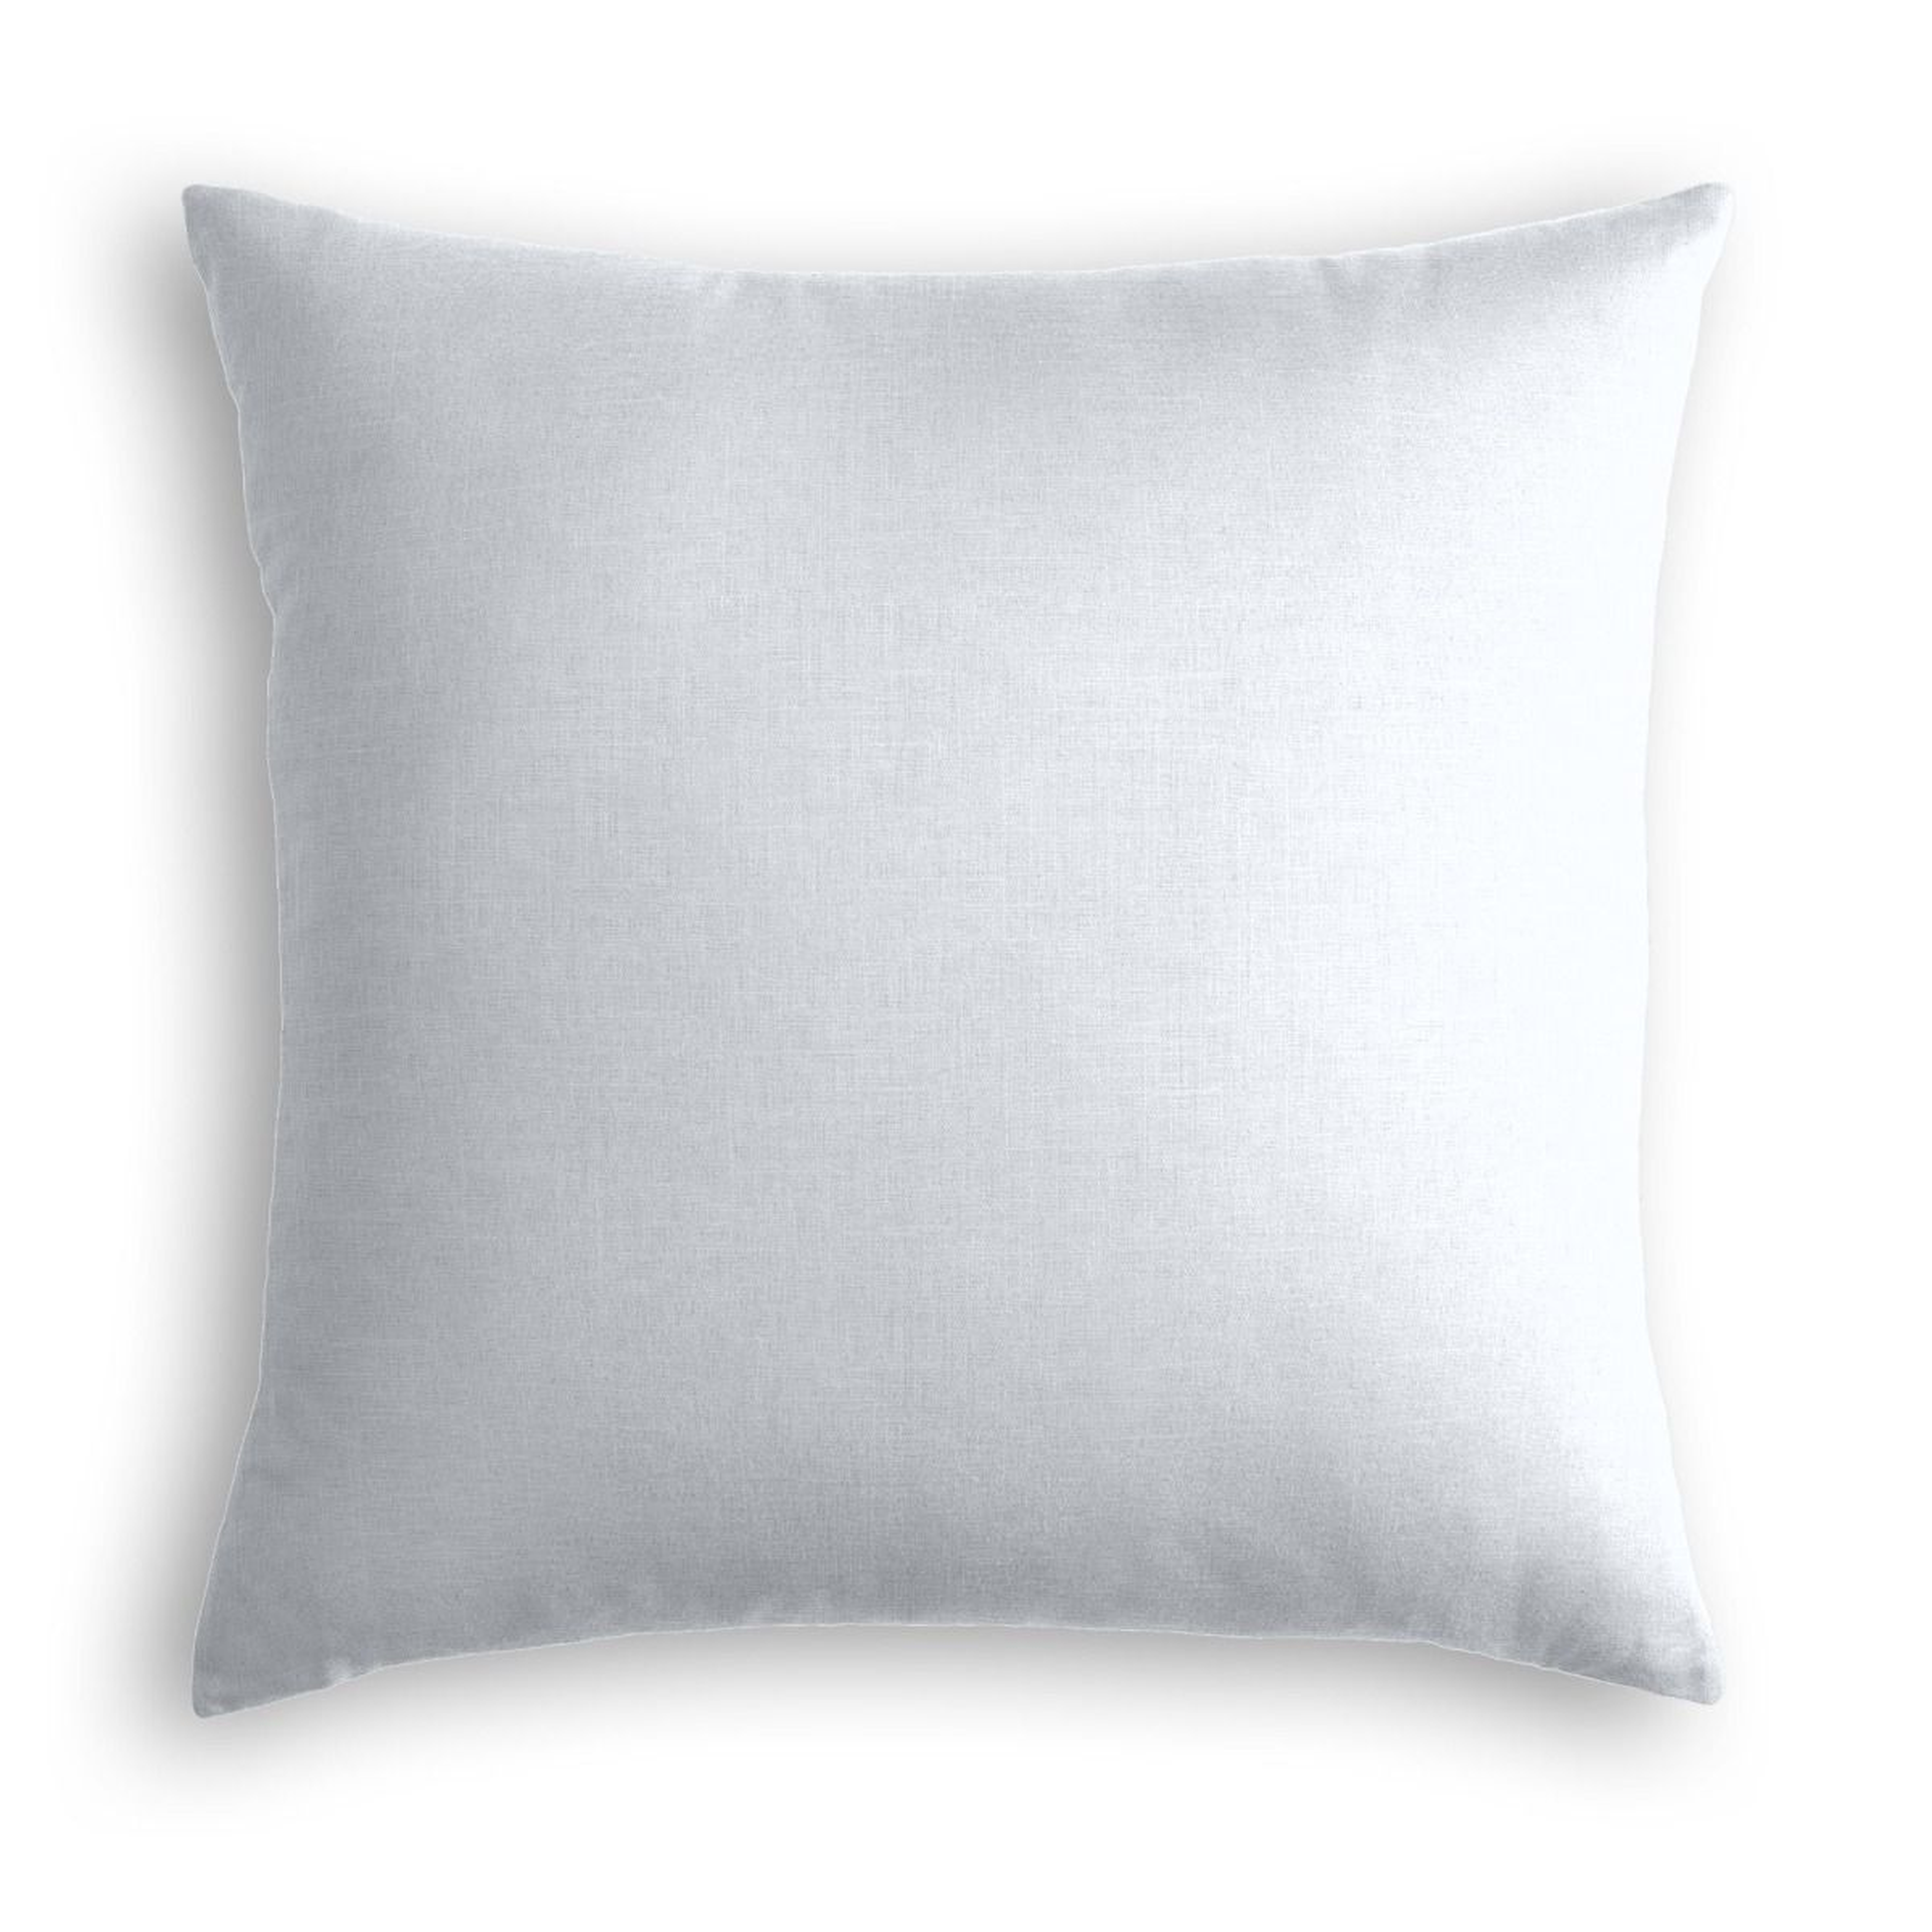 Classic Linen Pillow, Pale Blue, 22" x 22" - Havenly Essentials